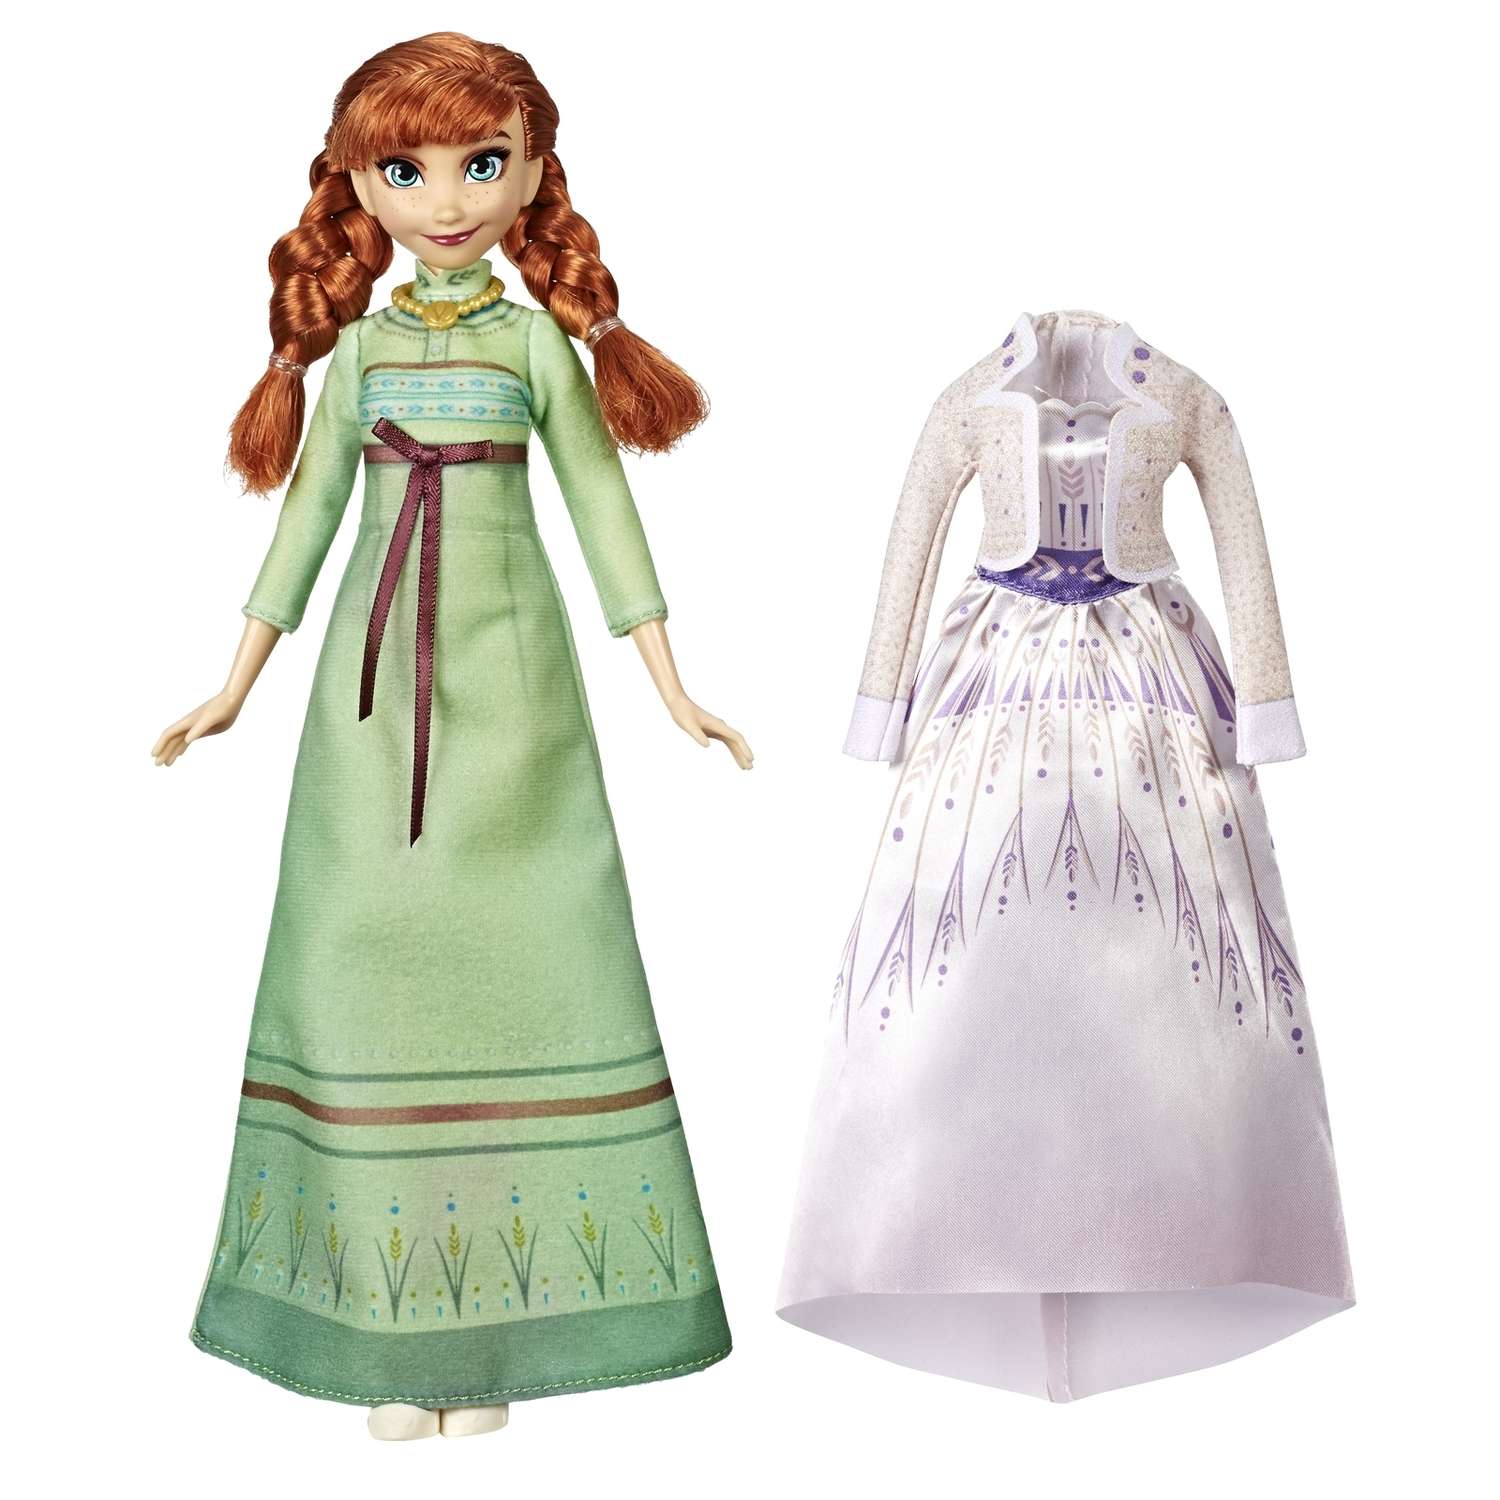 Кукла Disney Frozen Холодное Сердце 2 Анна с дополнительным нарядом E6908EU4 - фото 1